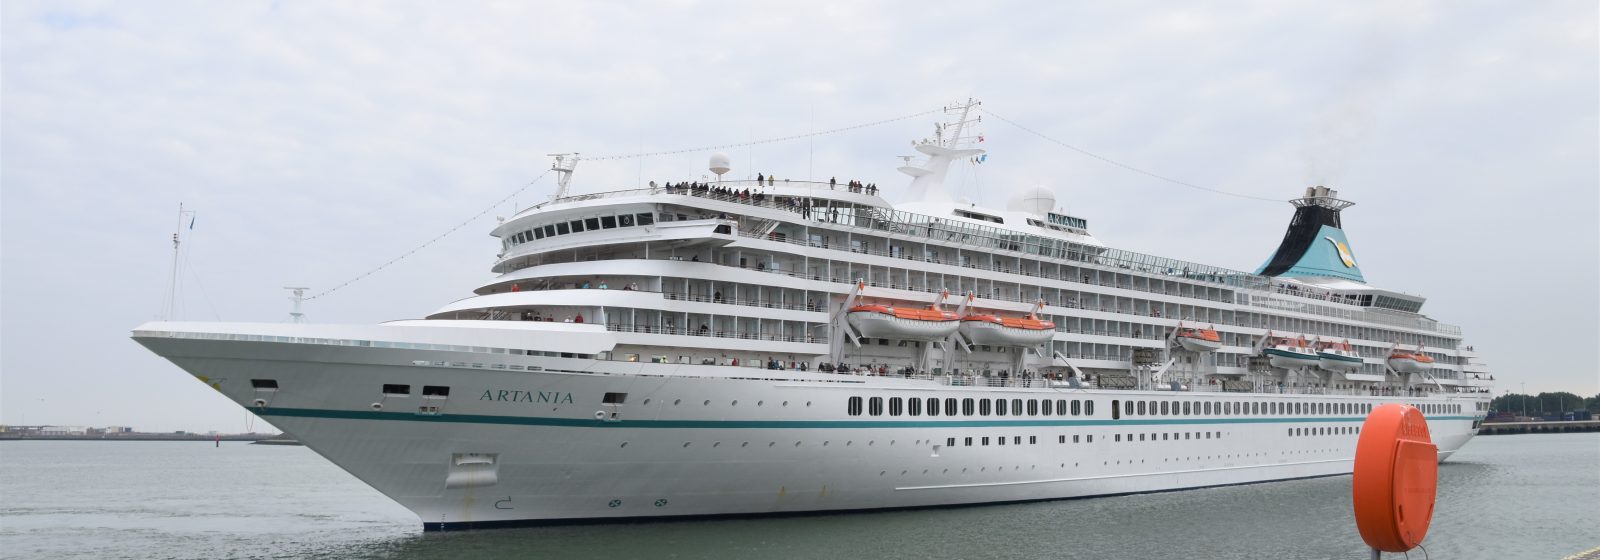 Cruiseschip 'MS Artania' in Zeebrugge